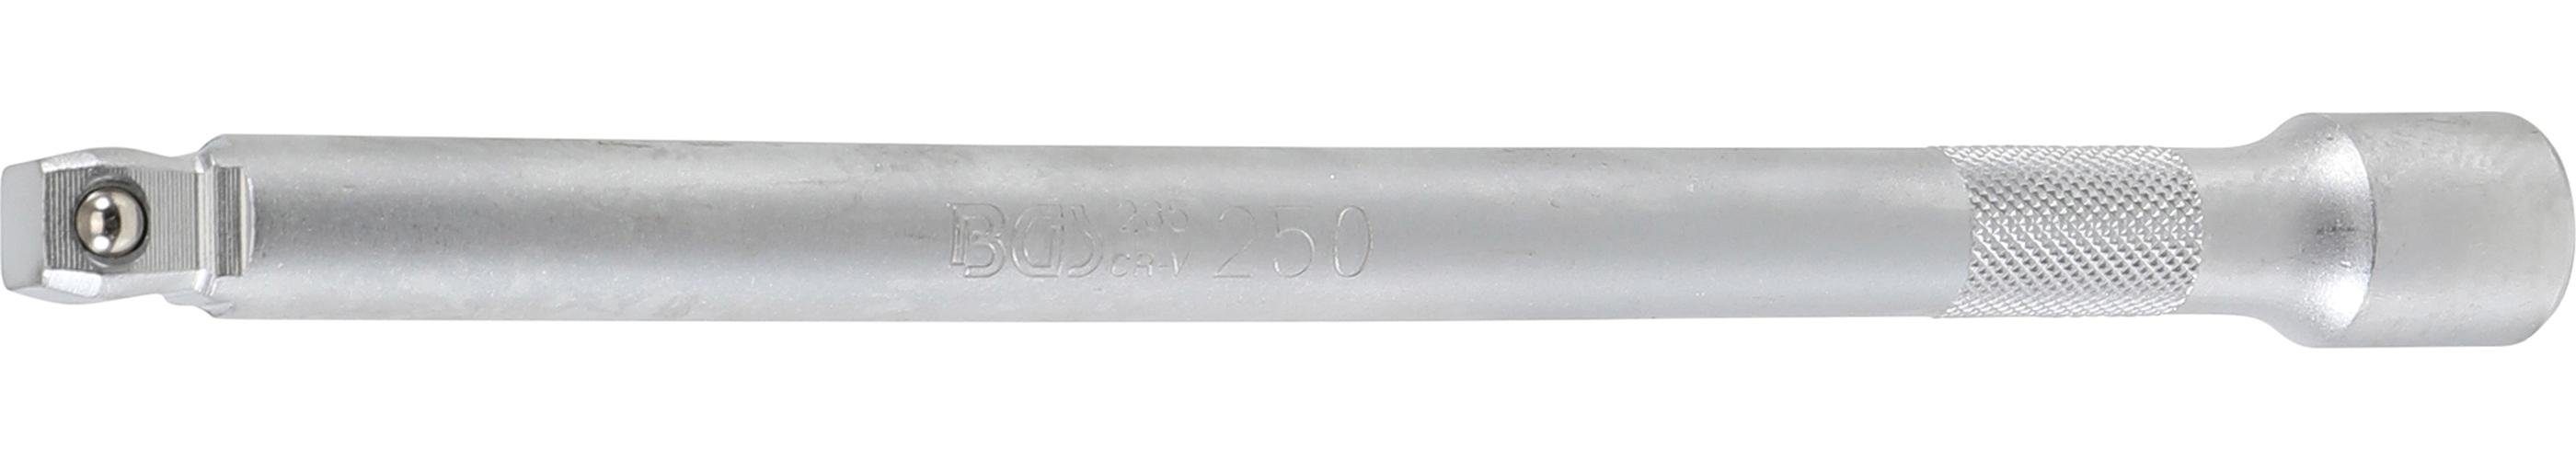 BGS technic Ratschenringschlüssel Kipp-Verlängerung, 12,5 mm (1/2), 250 mm